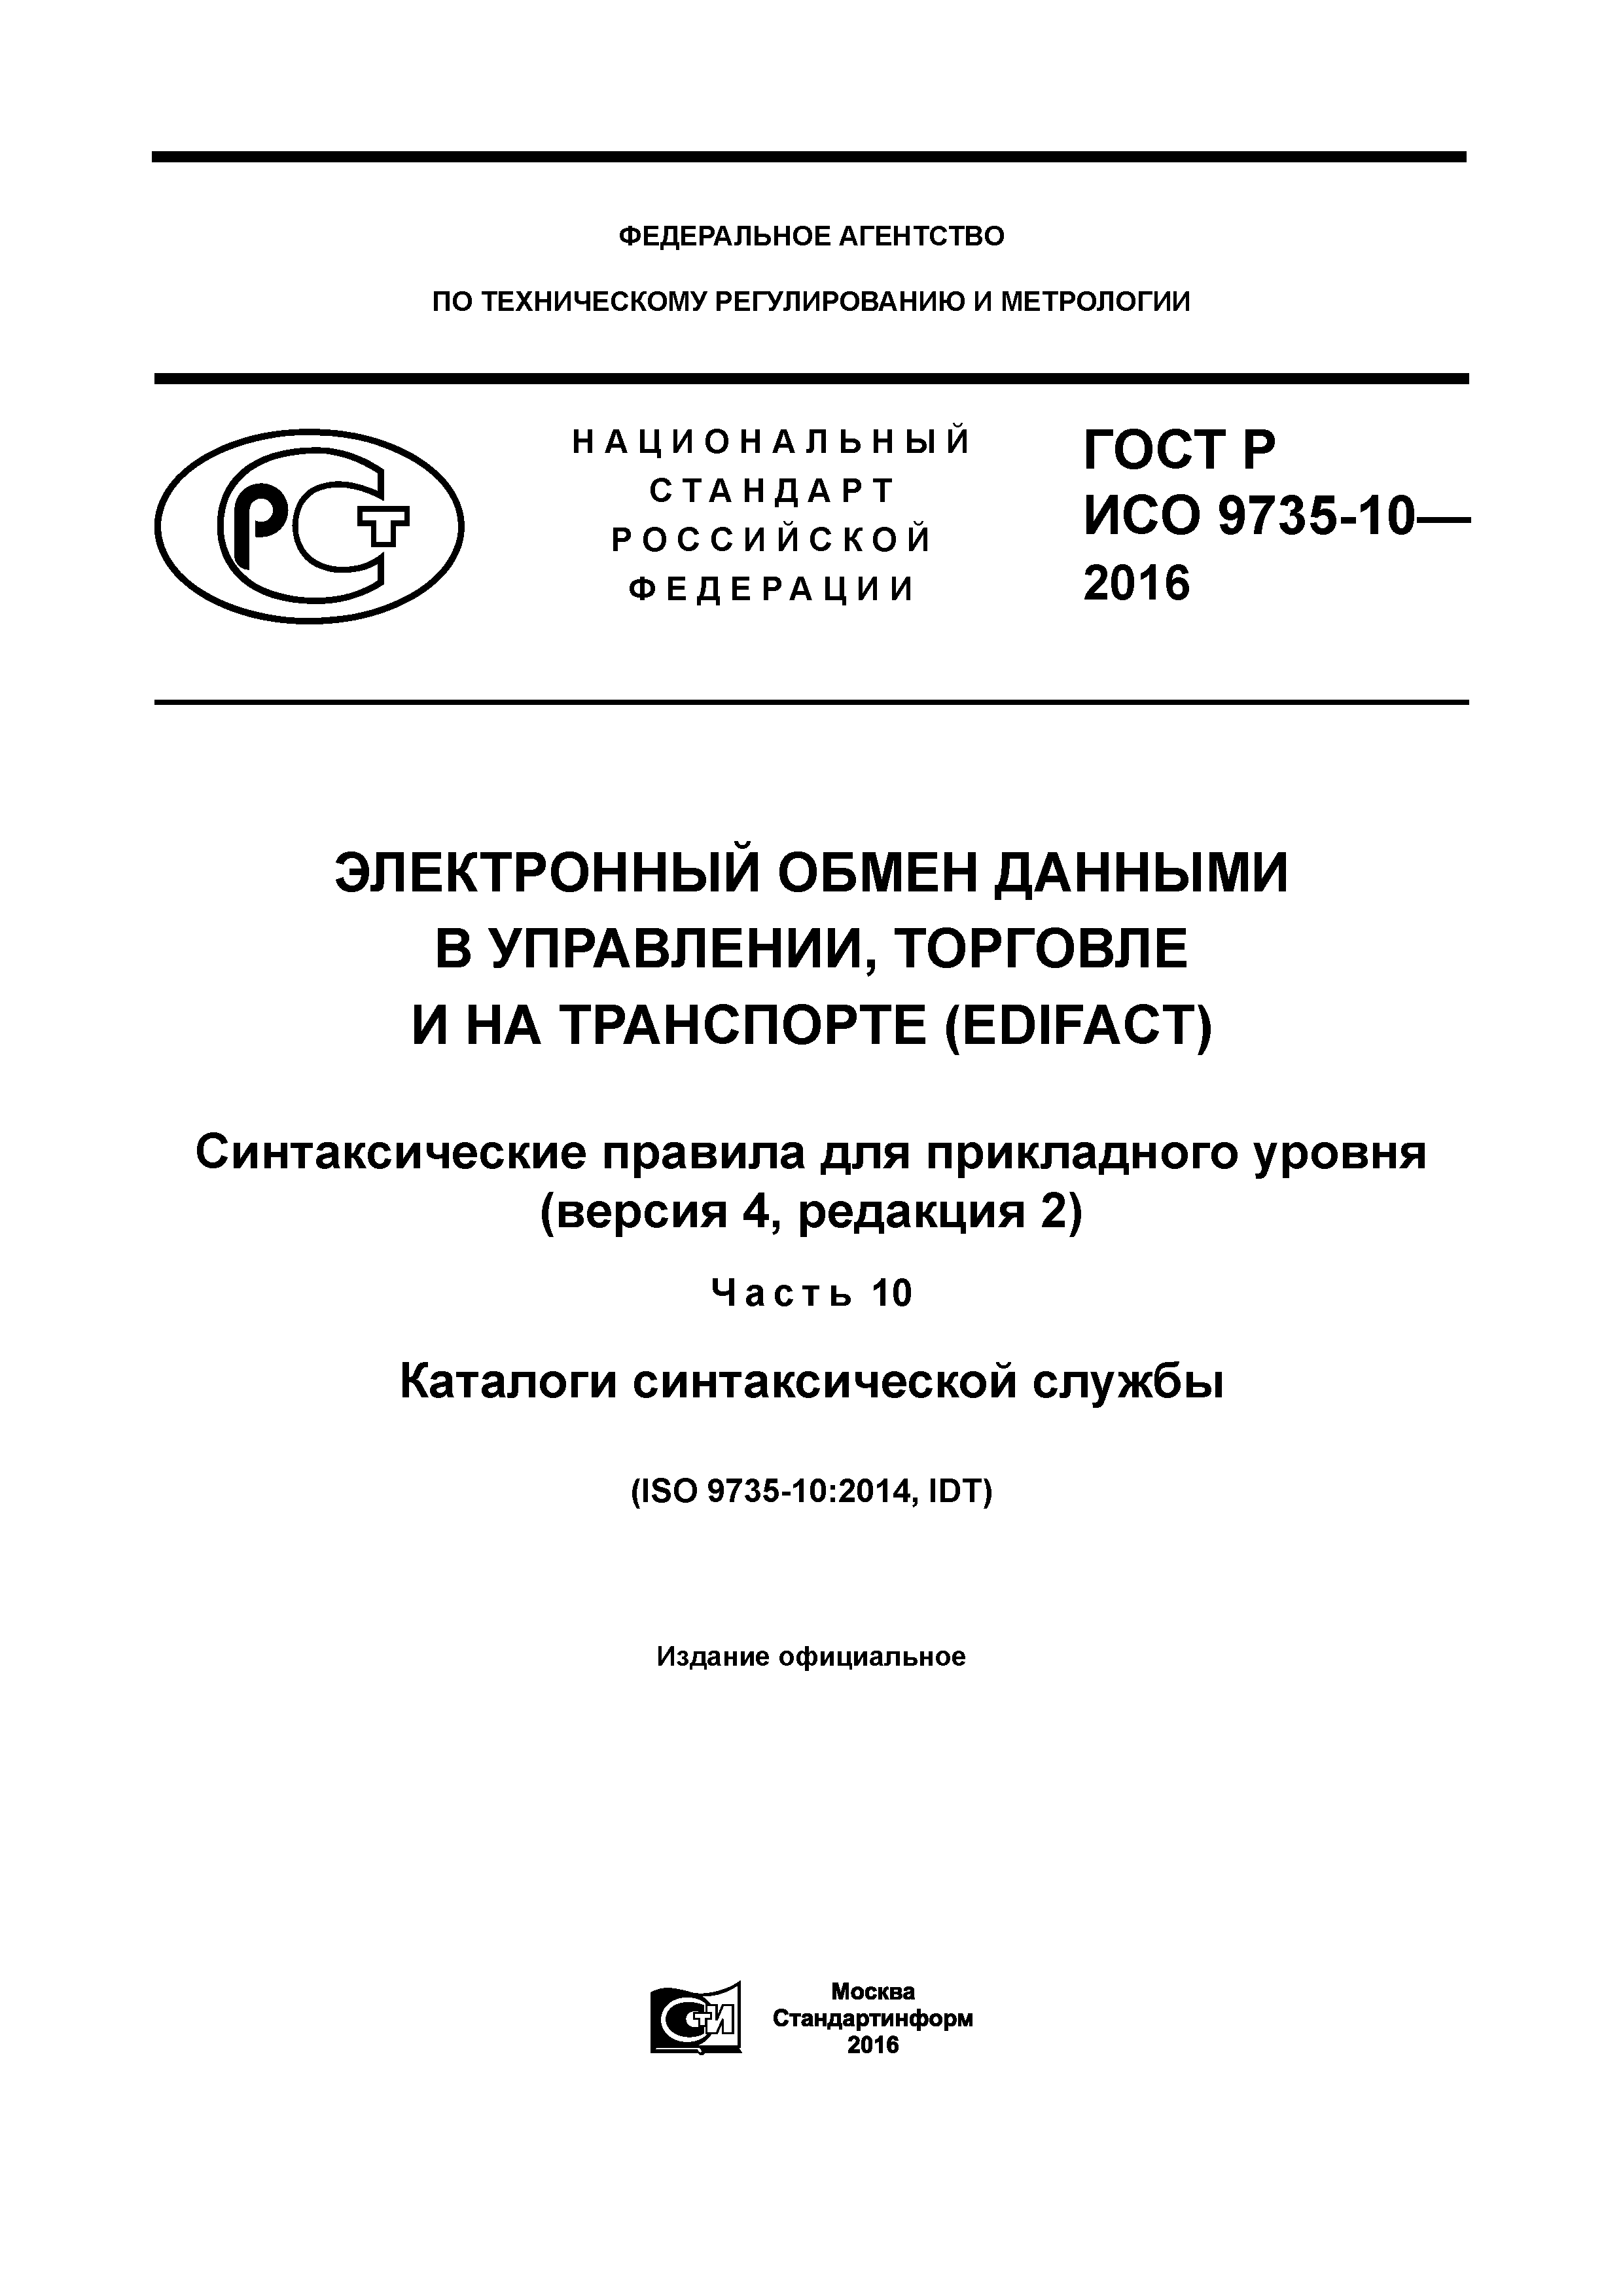 ГОСТ Р ИСО 9735-10-2016